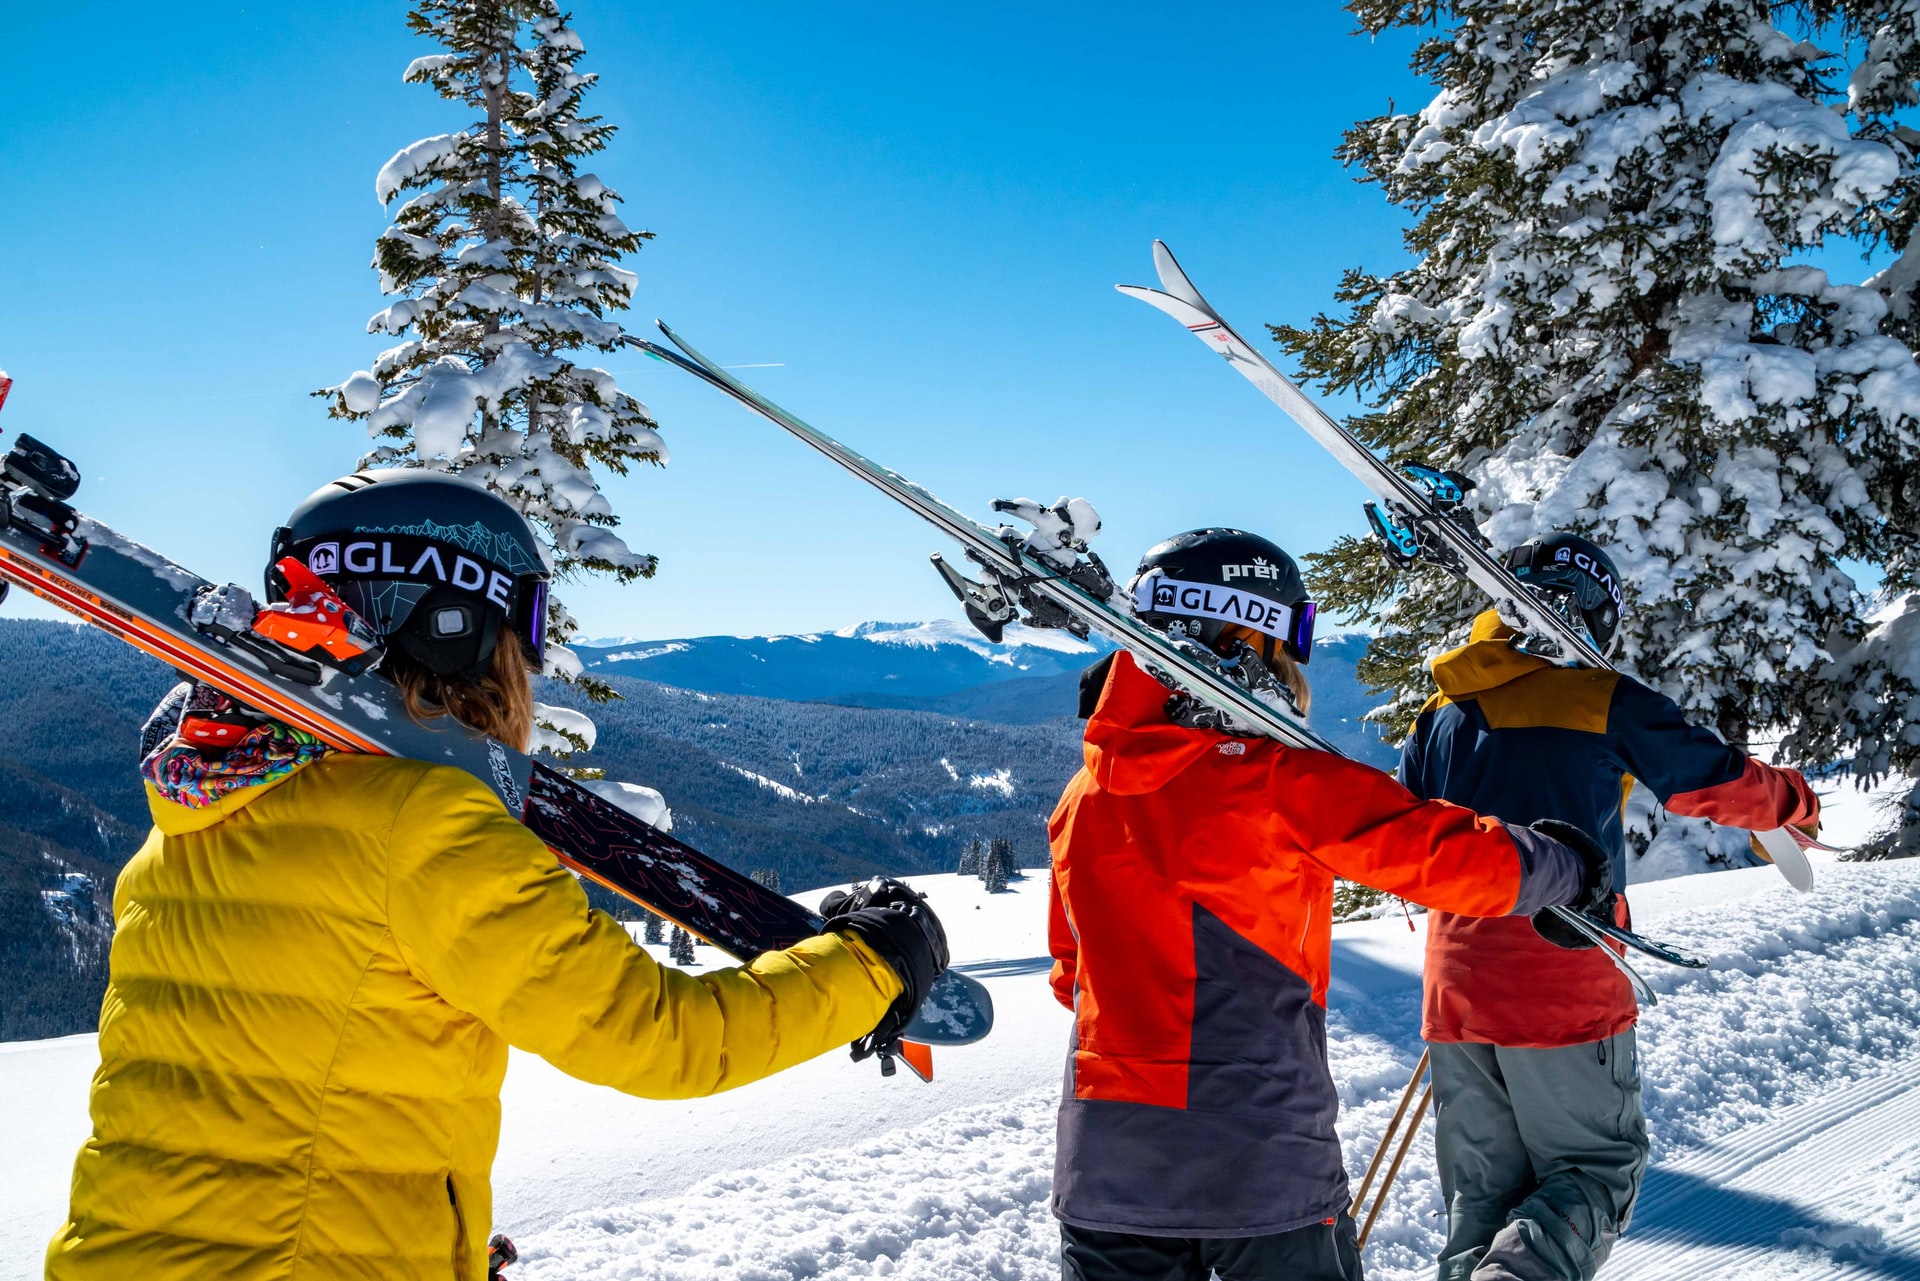 Comment bien choisir son équipement de ski